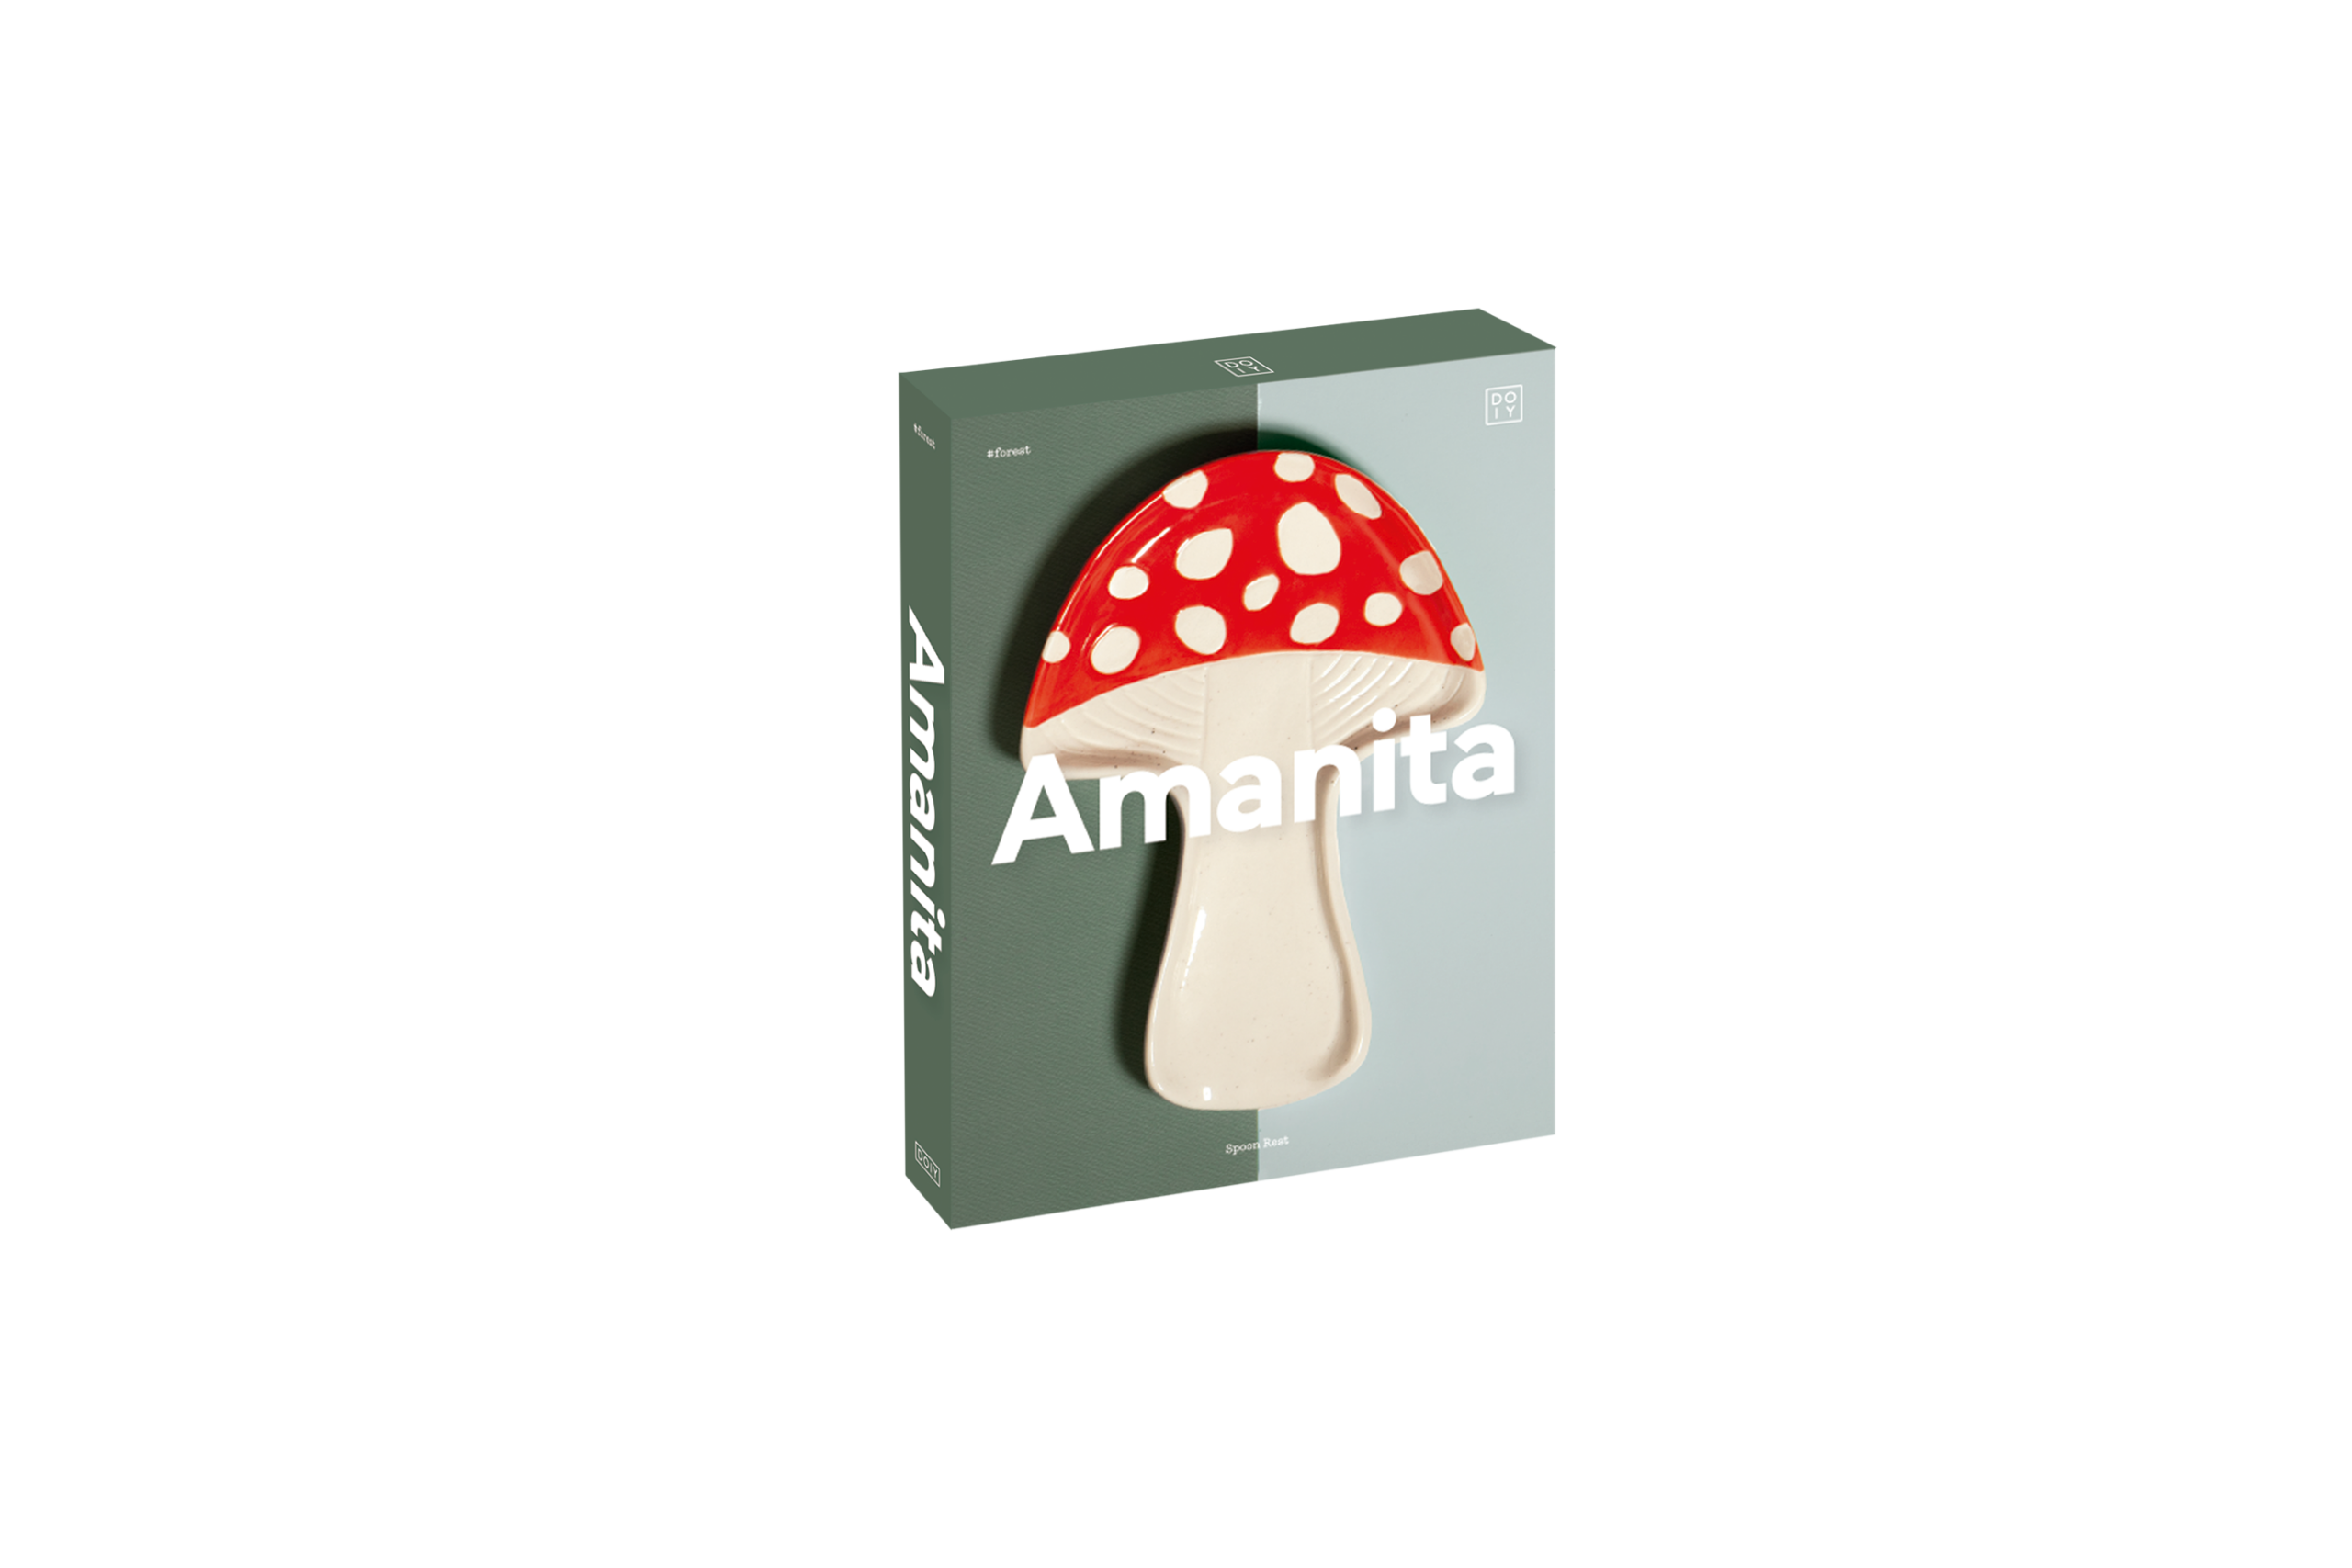 Amanita Mushroom Spoon Rest